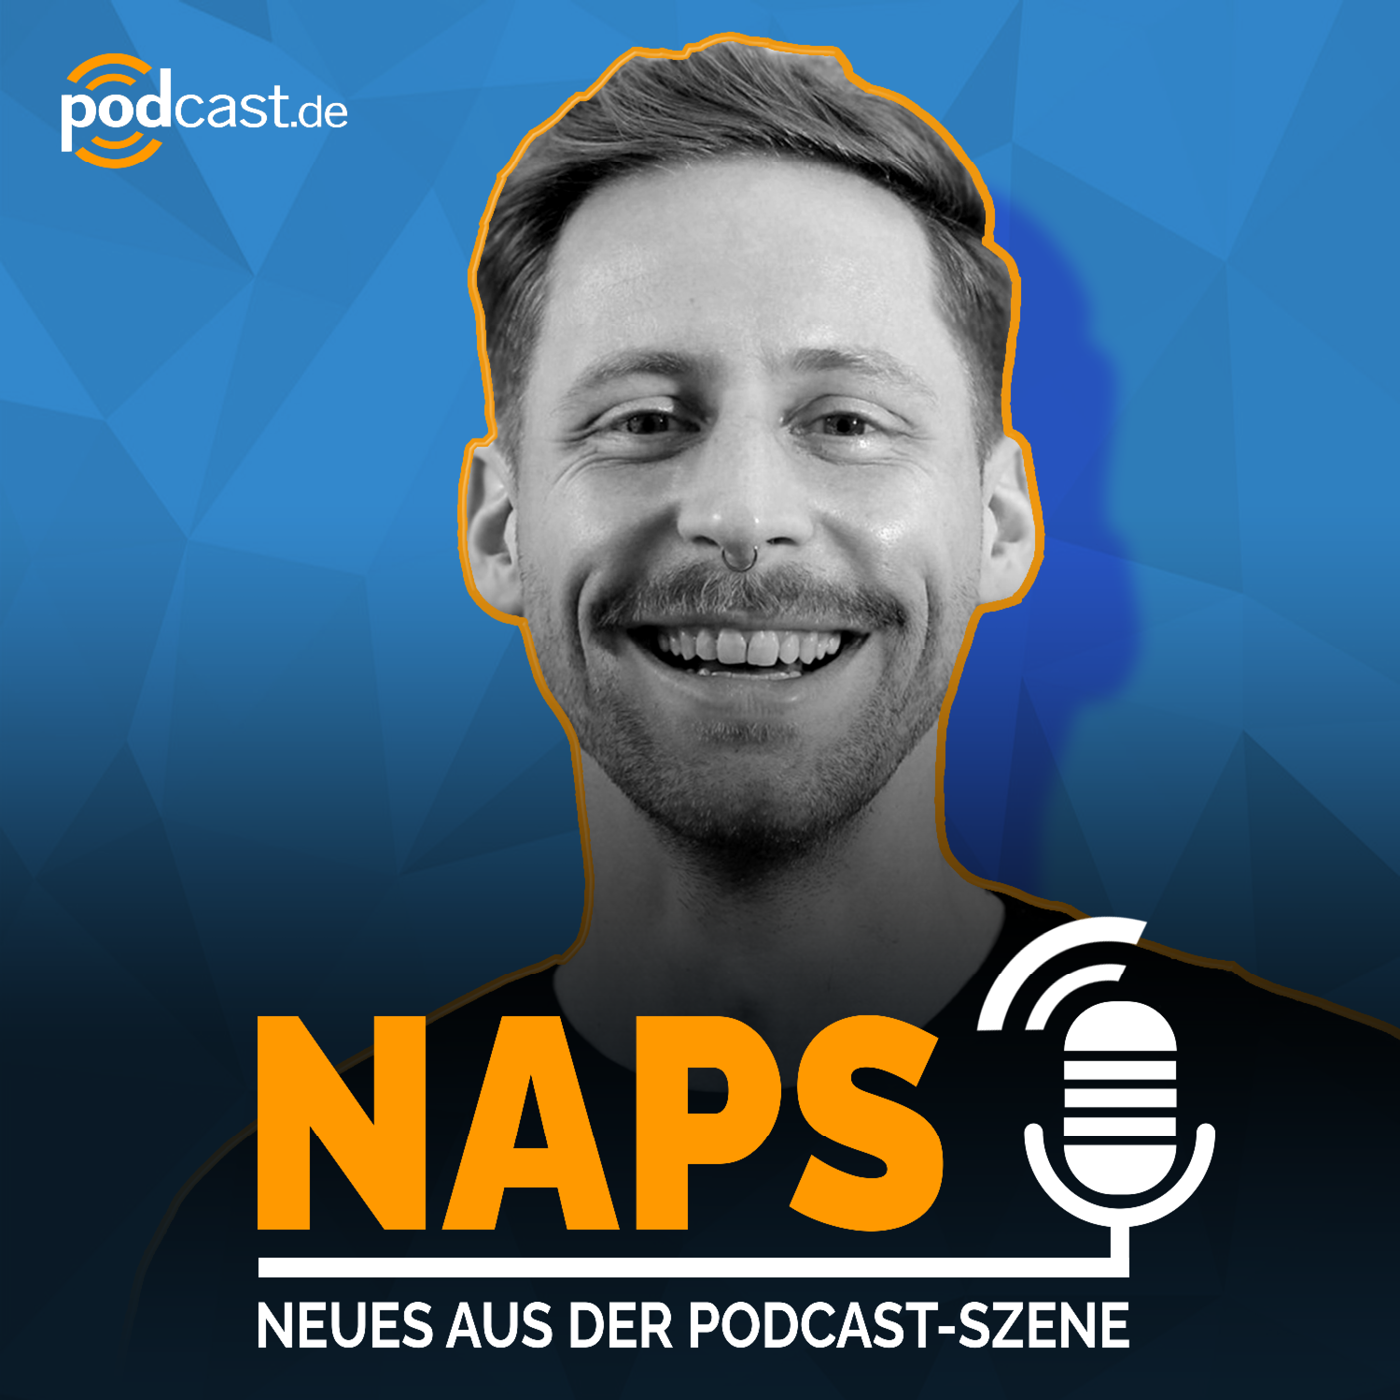 Vorgestellt: NAPS – Neues aus der Podcast-Szene